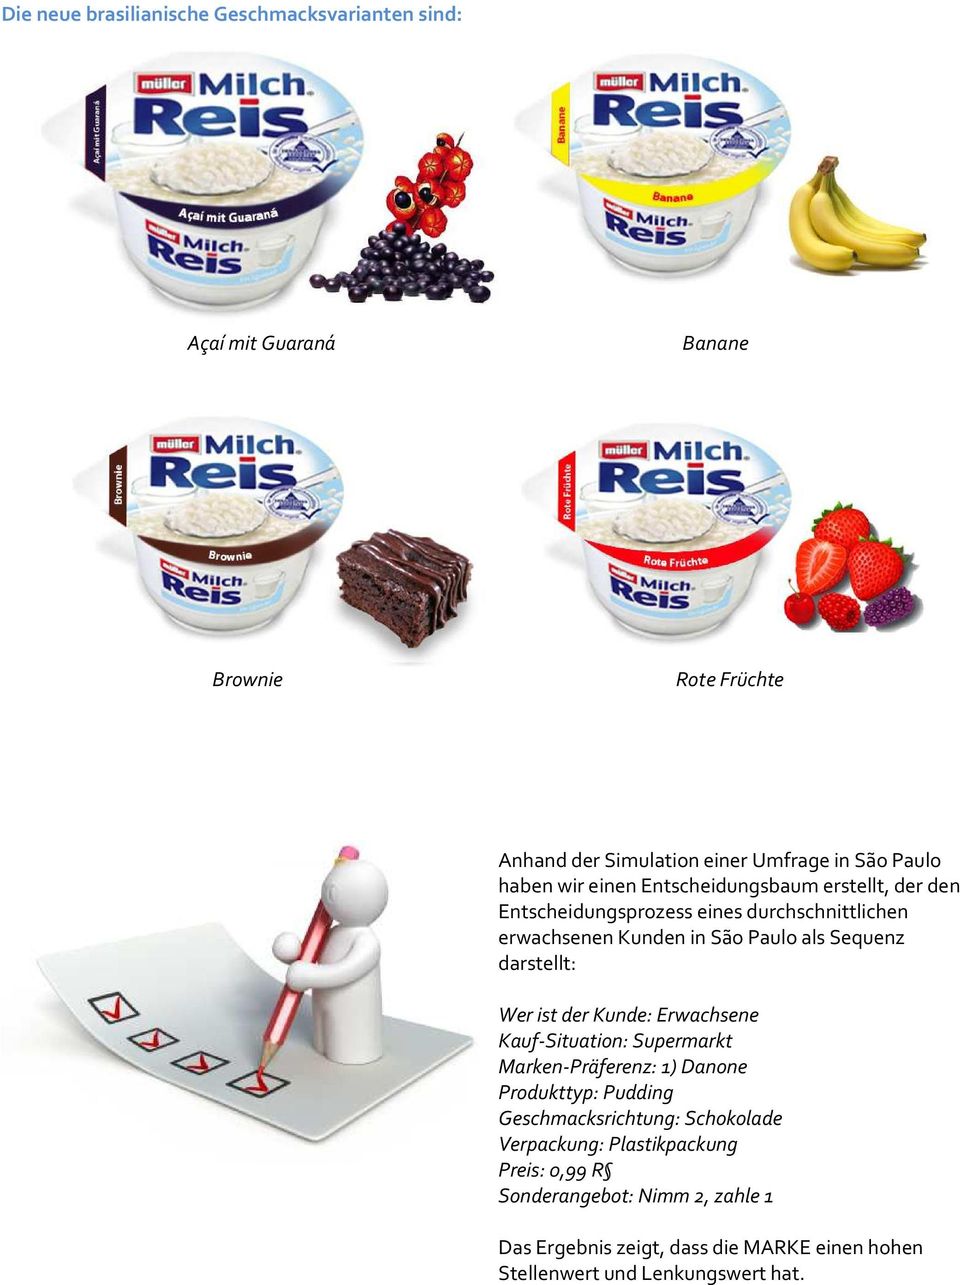 darstellt: Wer ist der Kunde: Erwachsene Kauf-Situation: Supermarkt Marken-Präferenz: 1) Danone Produkttyp: Pudding Geschmacksrichtung: Schokolade